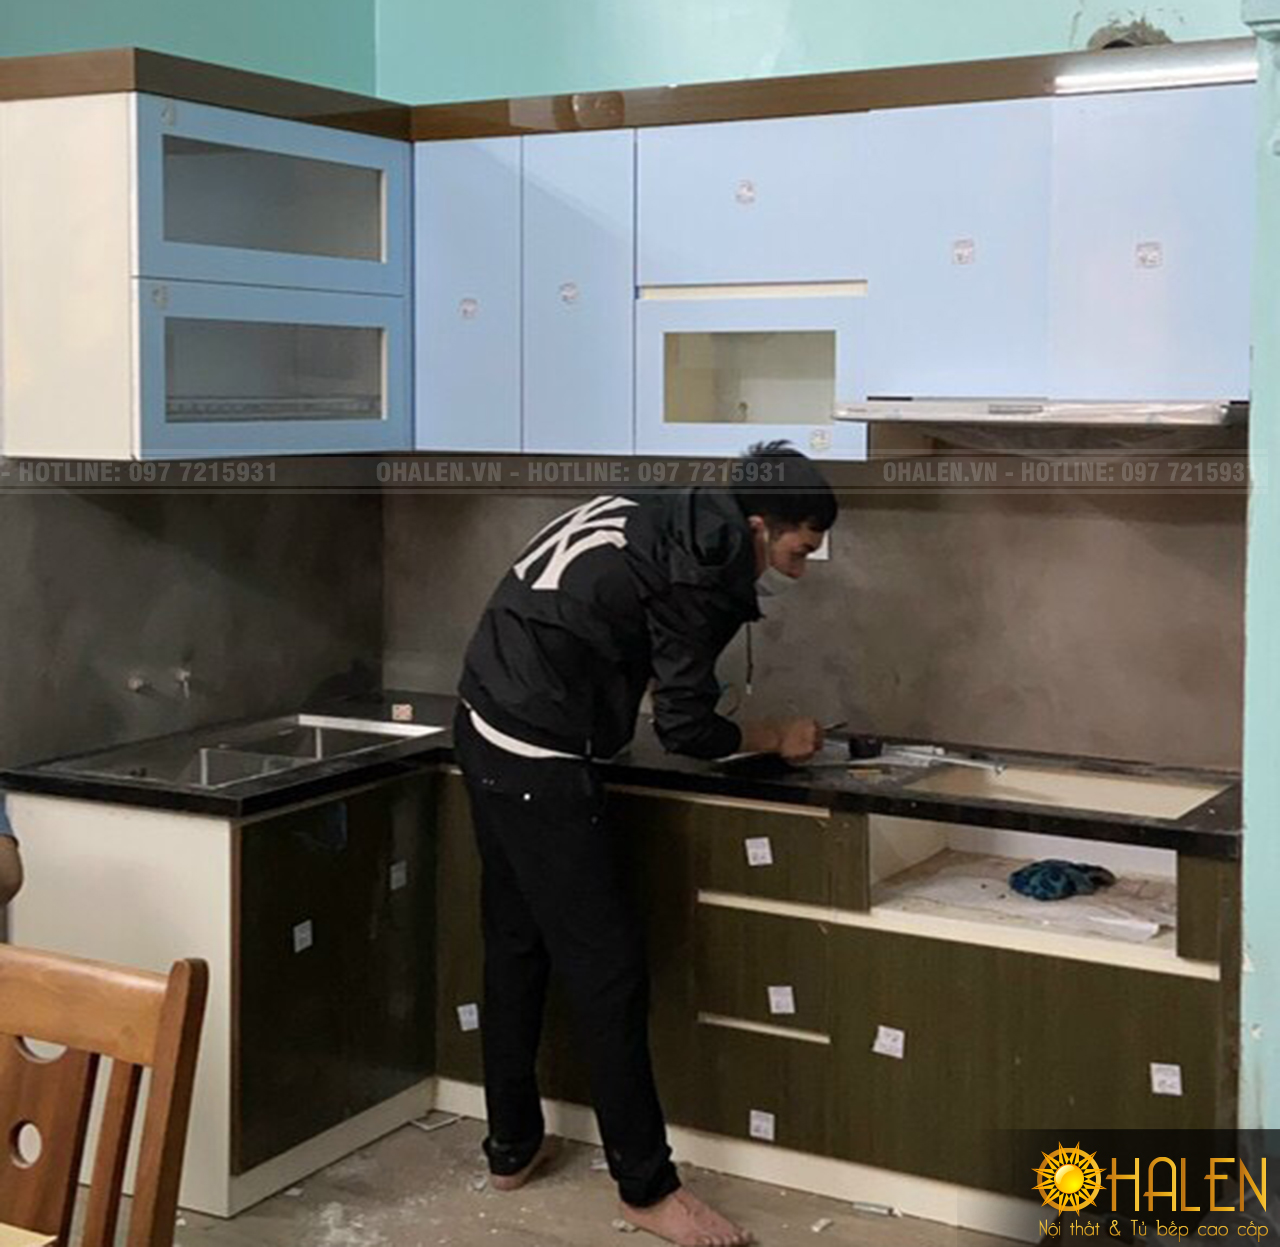 Hình ảnh thợ thi công đang tiến hành lắp đặt tủ bếp cho gđ chị Vinh - Hà Đông